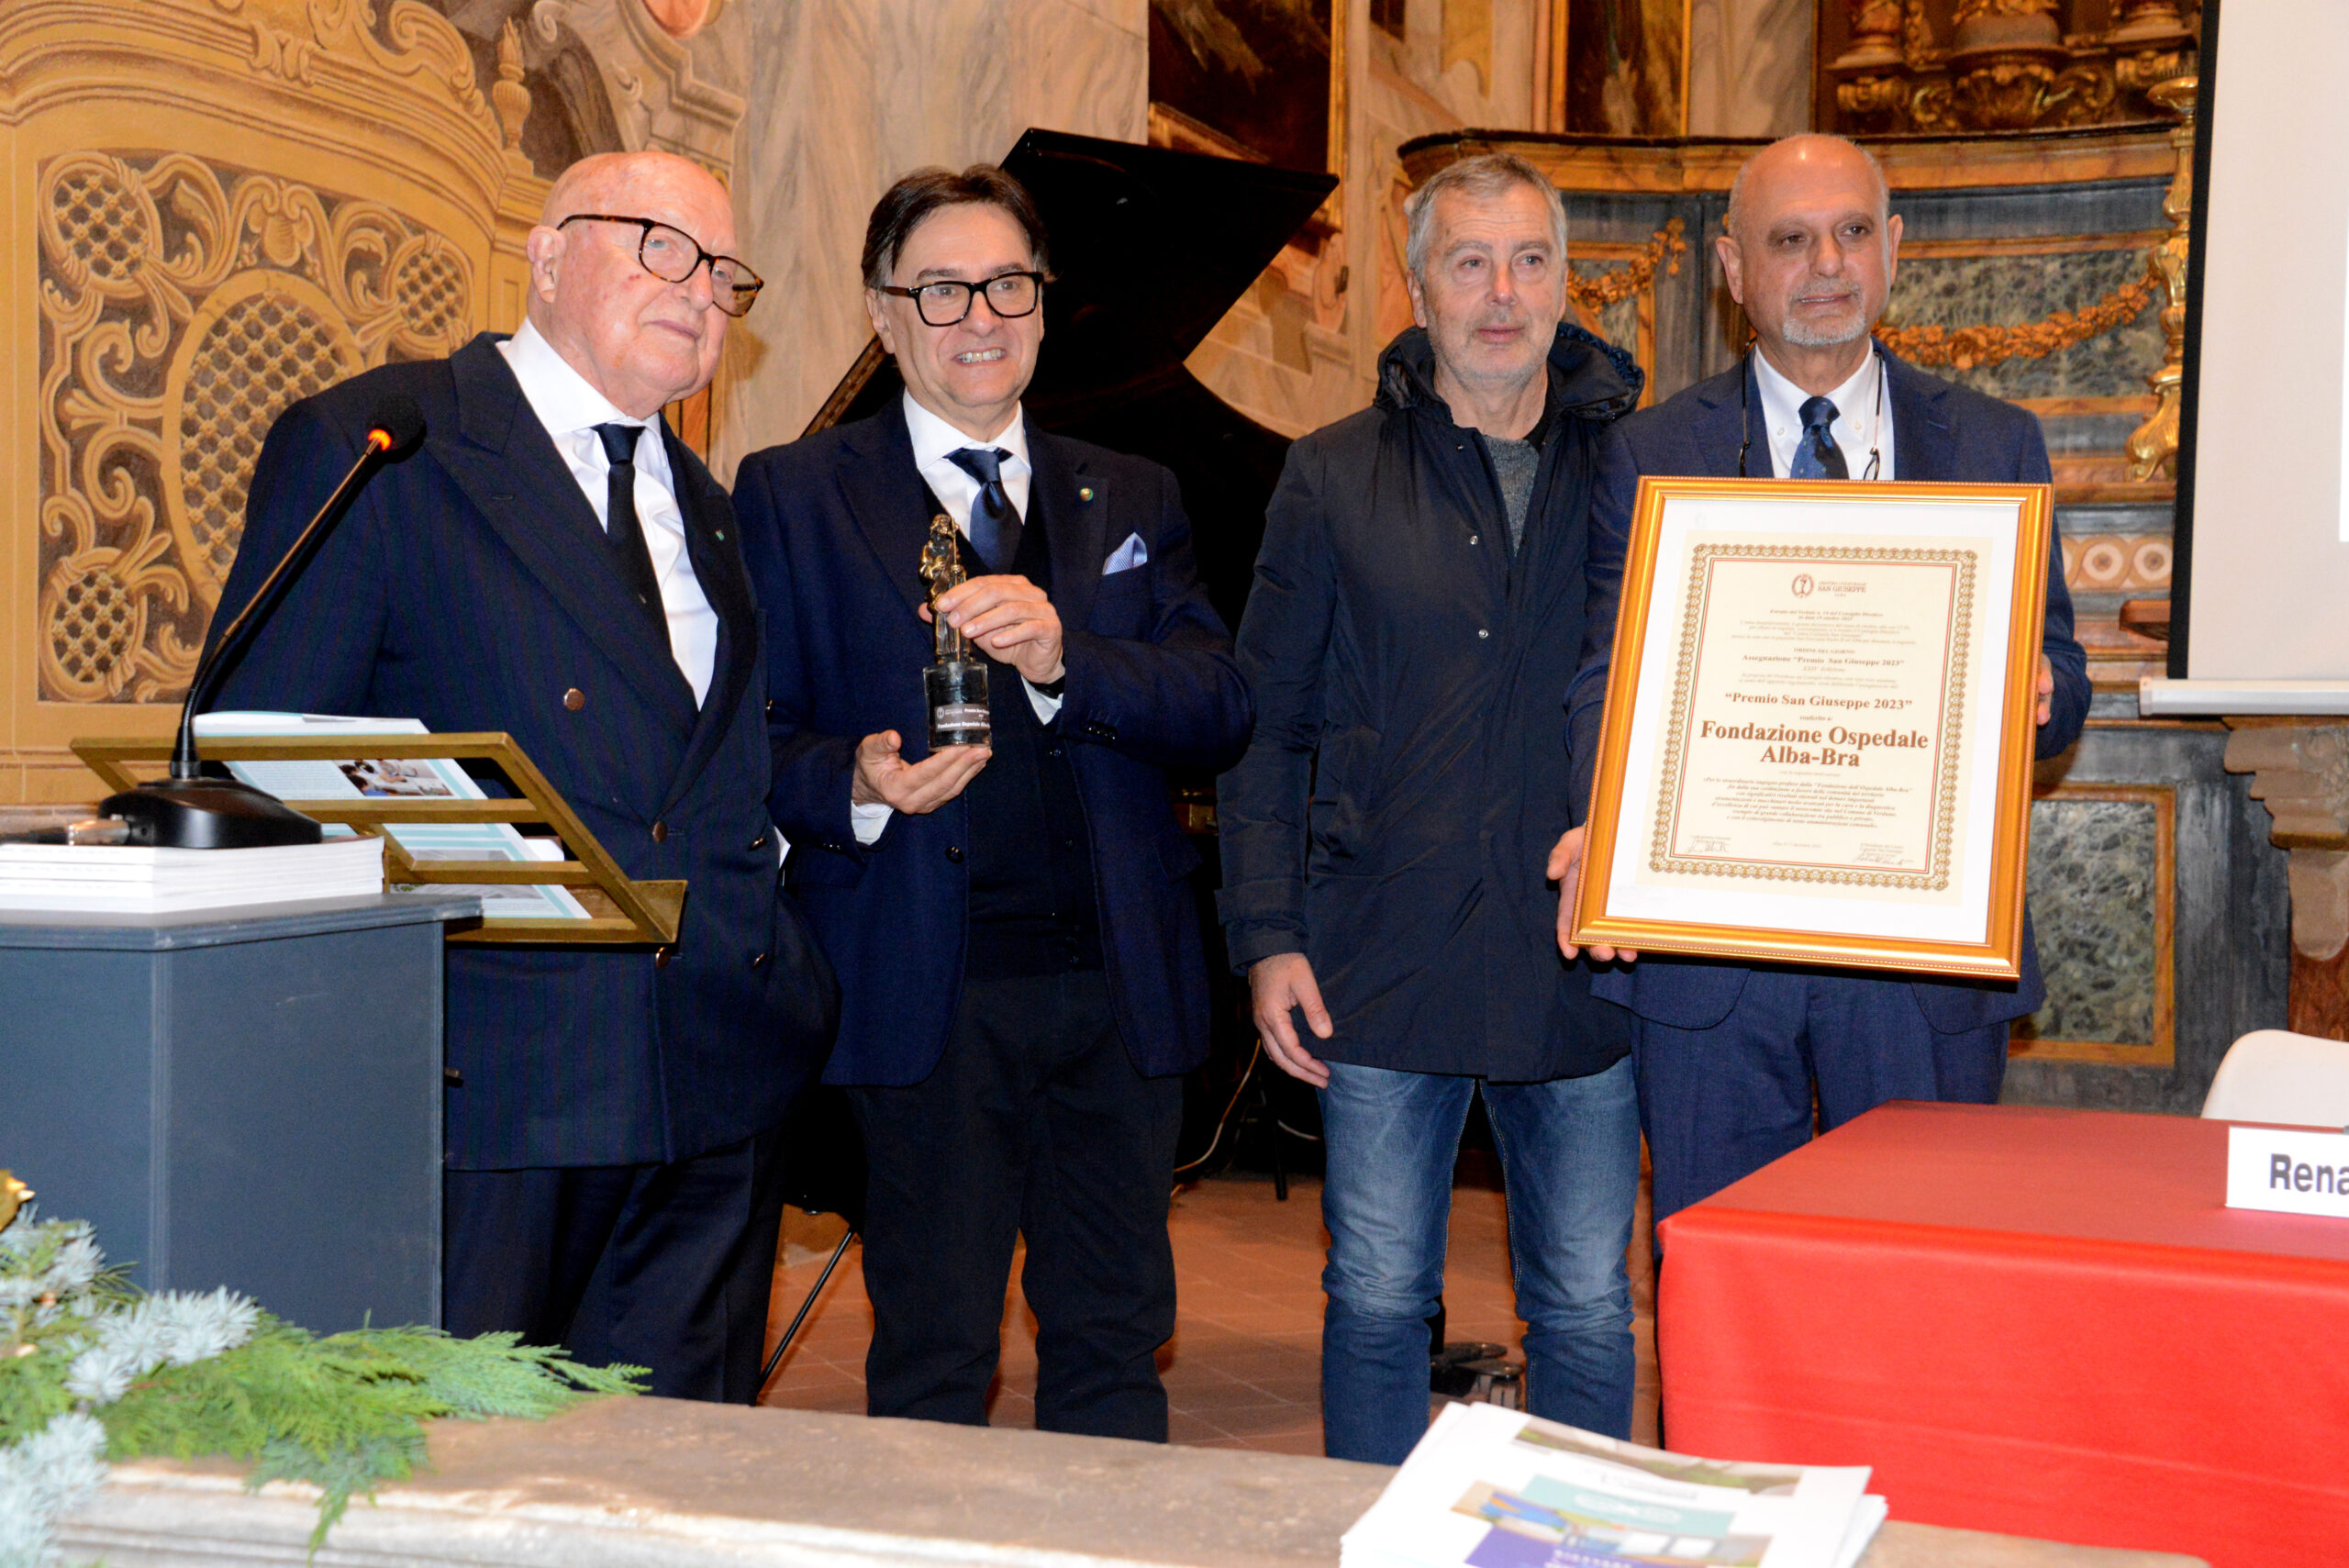 Premio San Giovanni 2023 alla fondazione Ospedale Alba-Bra (FOTOGALLERY) 7